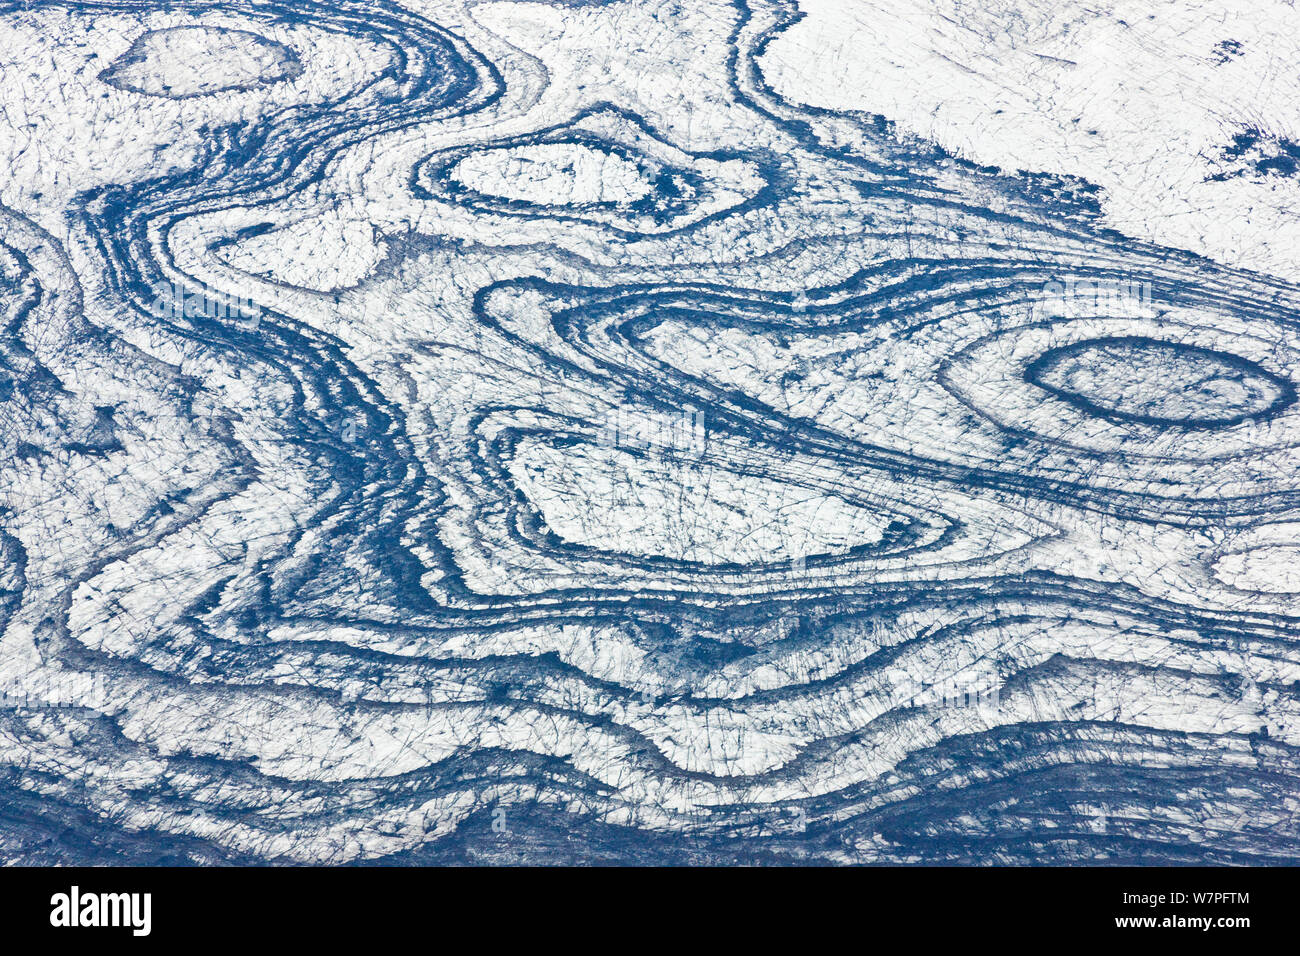 Gletscher Vatnajökull aus der Luft mit abstrakten Mustern gesehen. Island, Europa, Juli 2009. Stockfoto